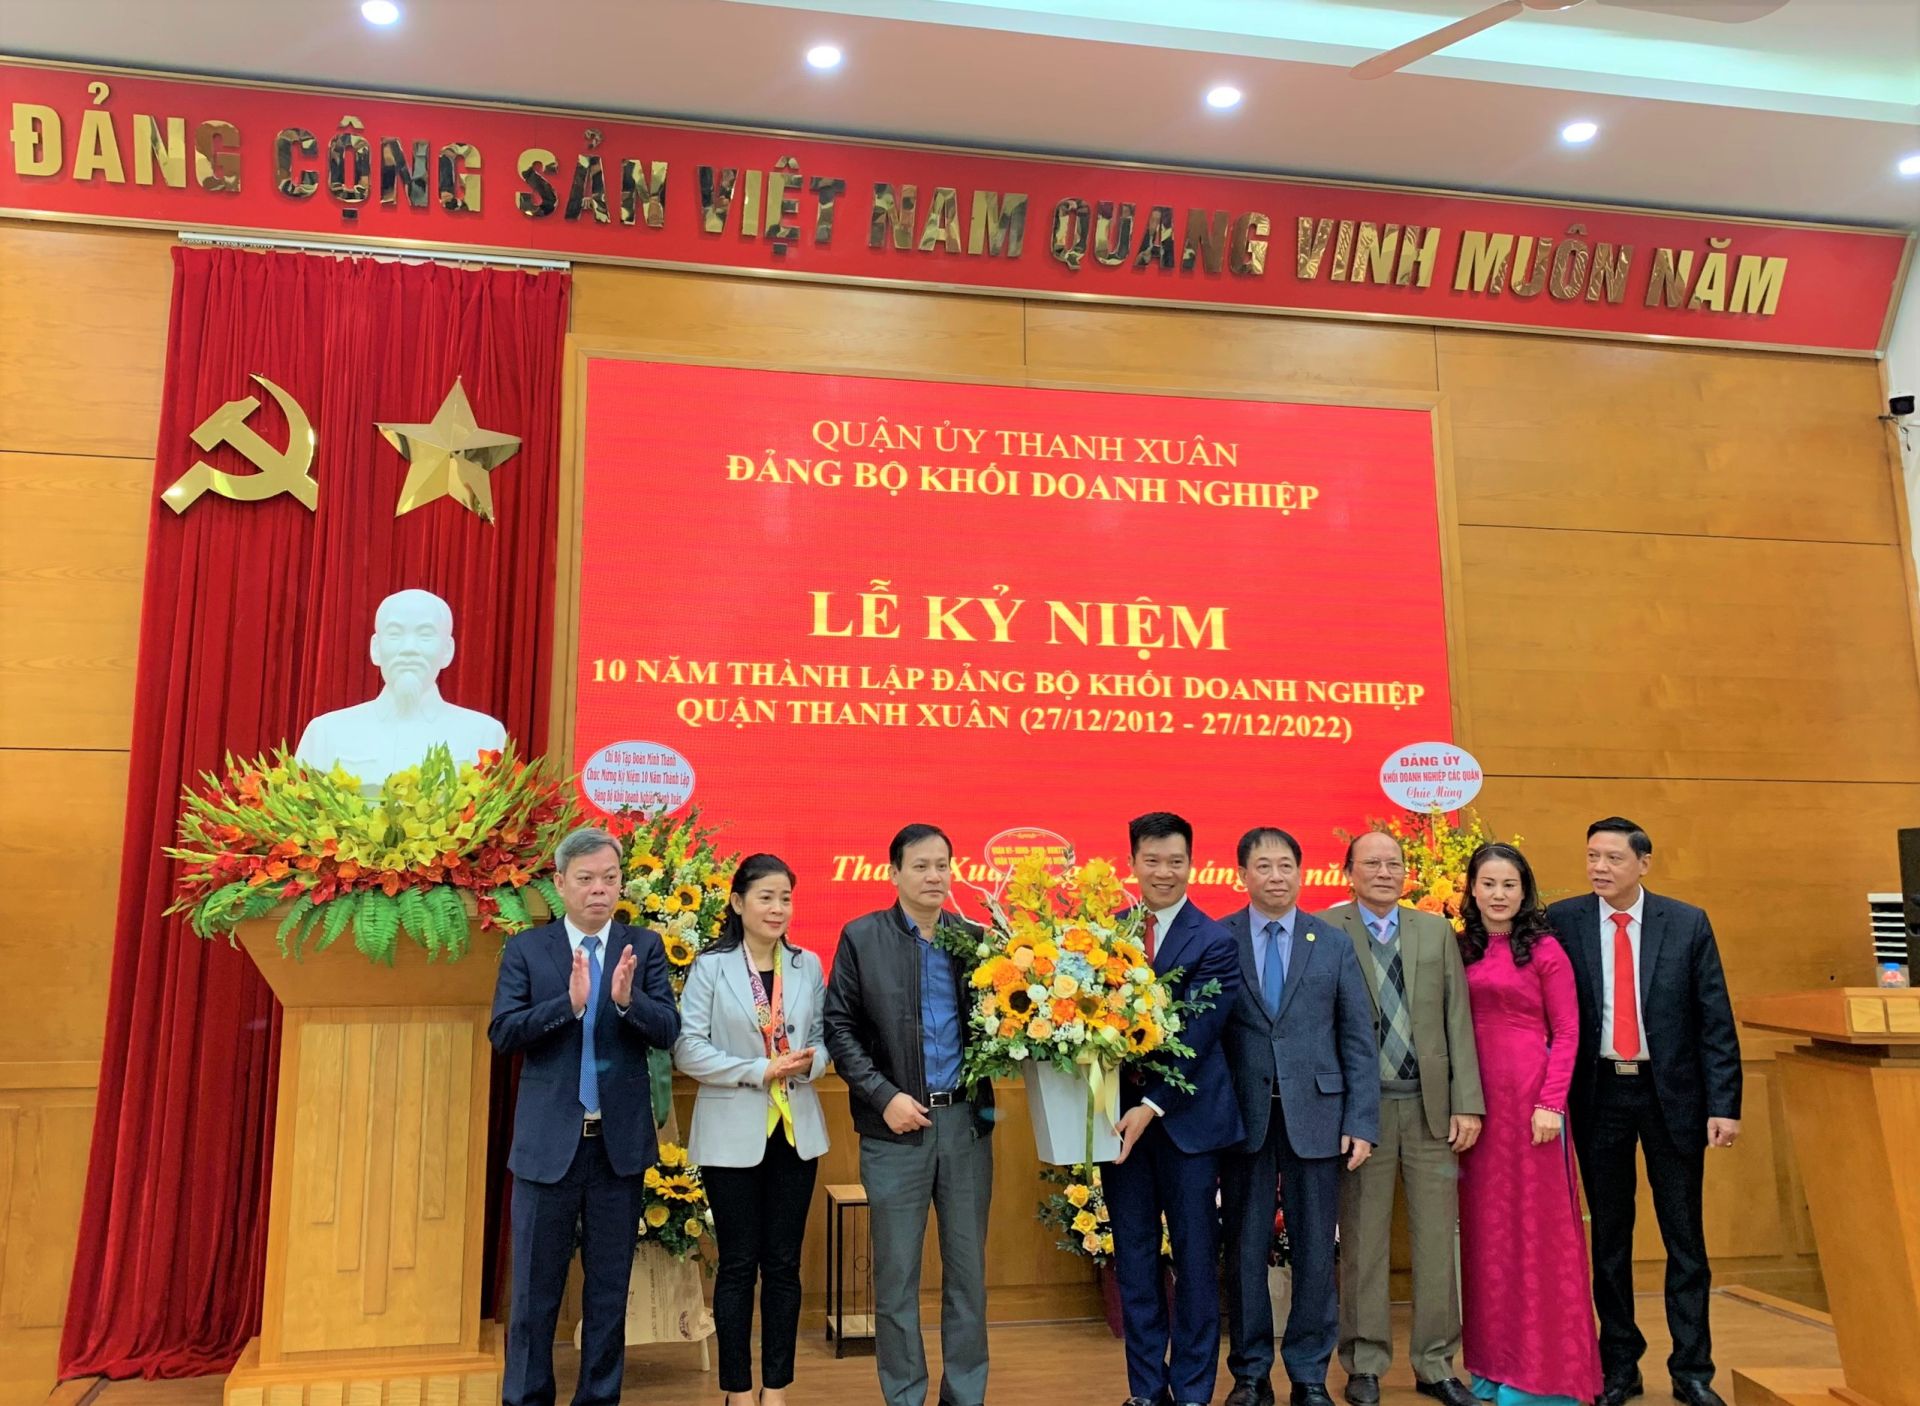 Đại diện các Ban Công tác của Thành ủy Hà Nội, lãnh đạo Quận ủy Thanh Xuân tặng hoa chúc mừng Đảng ủy Khối Doanh nghiệp quận Thanh Xuân.